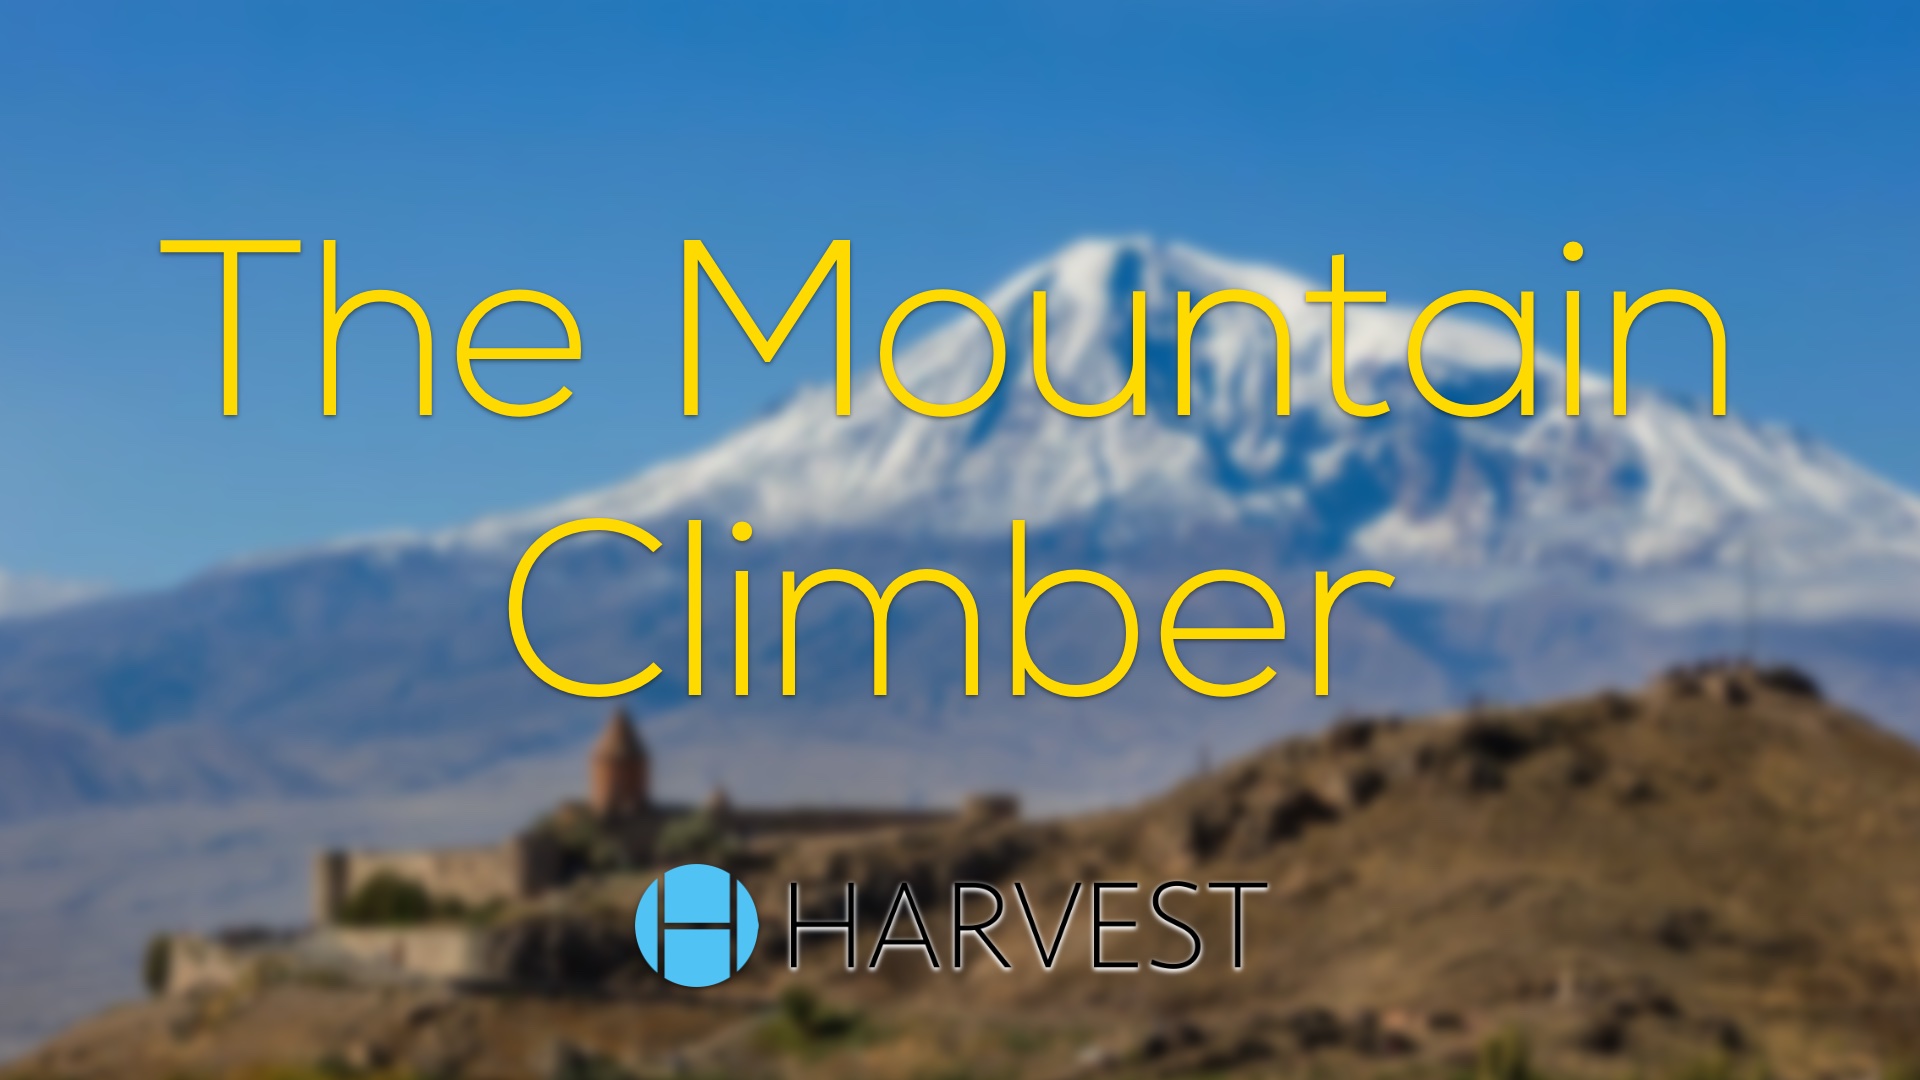 The Mountain Climber